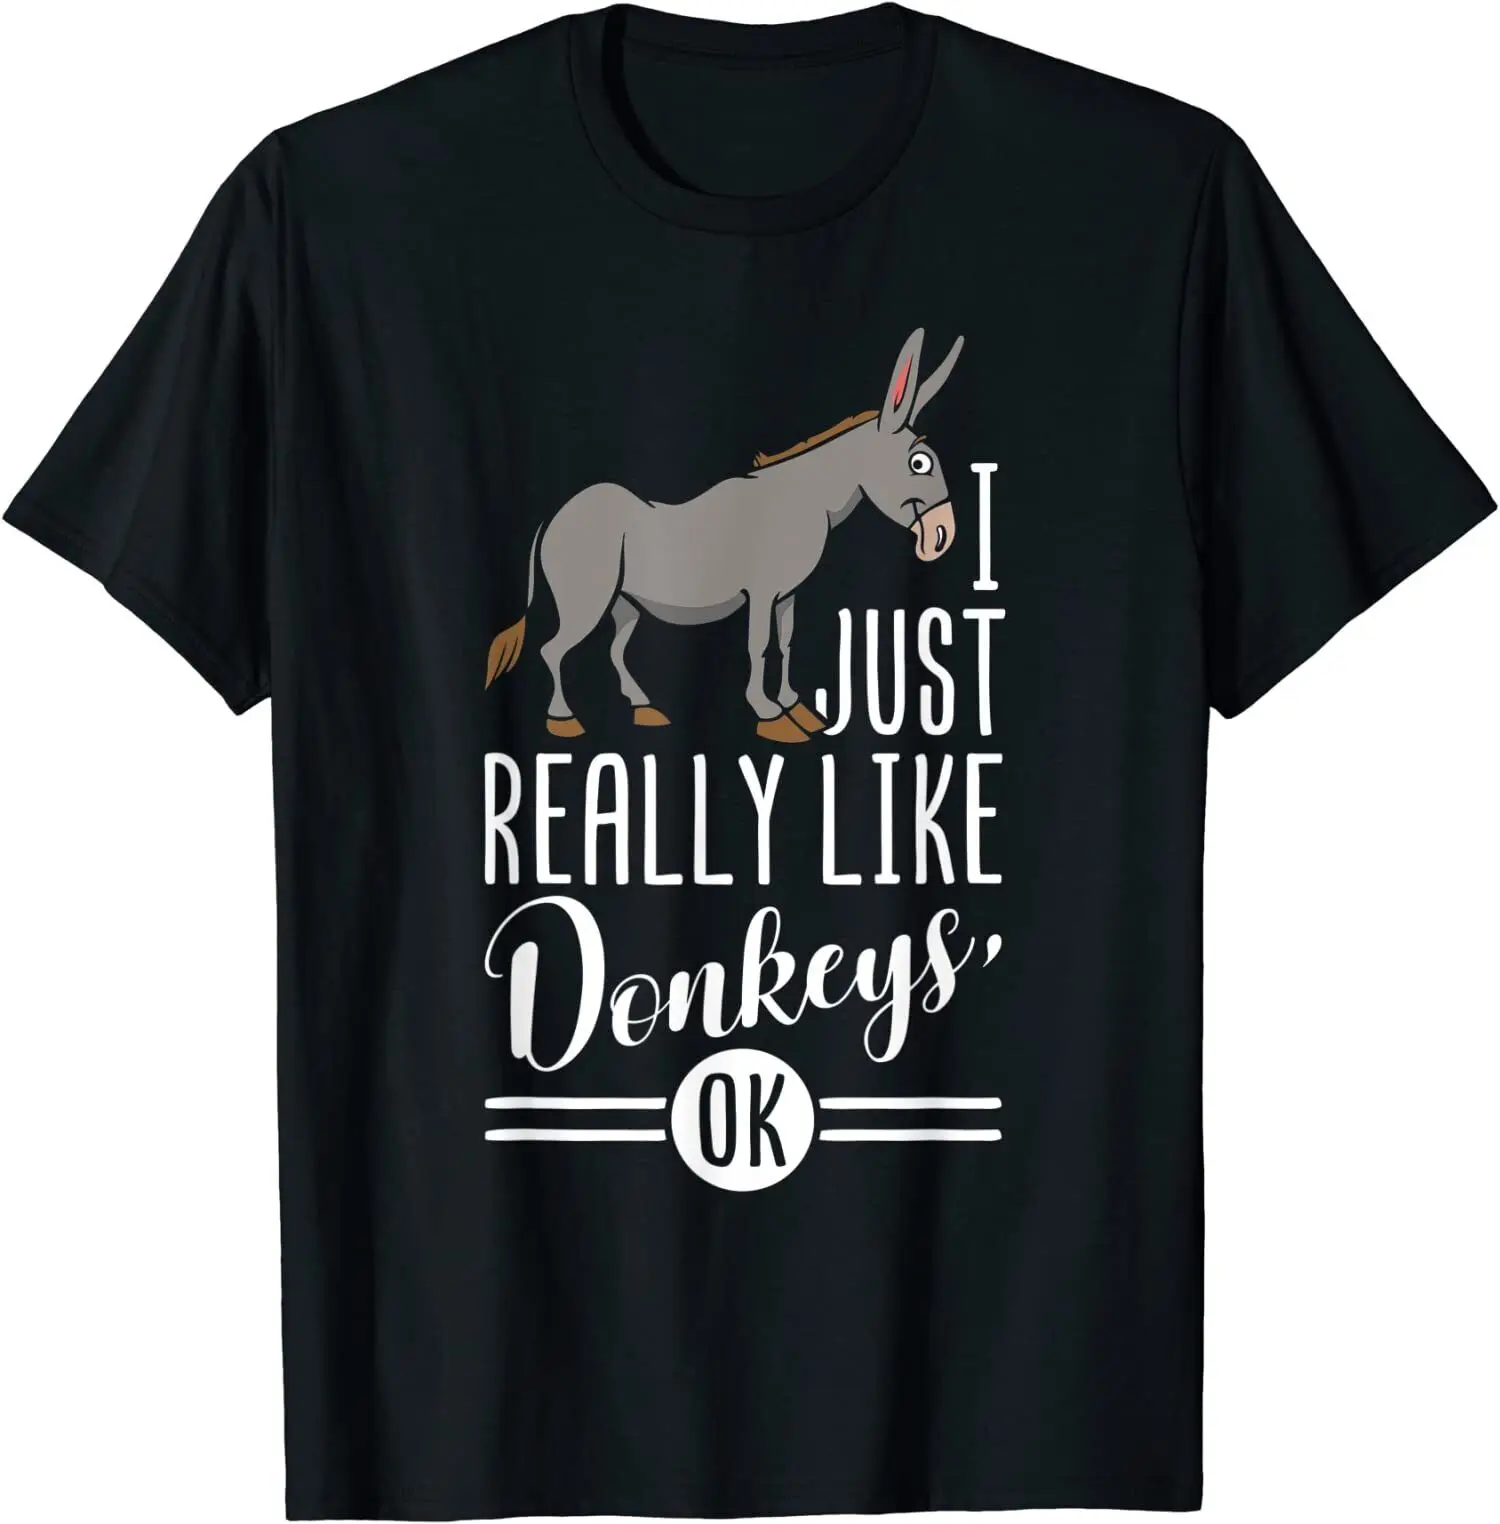 I Just Really Like Donkeys OK Tshirt Aesthetic T-shirt Japanese Ulzzang Grunge Grunge Top Tee Aesthetic Men Harajuku T Shirt